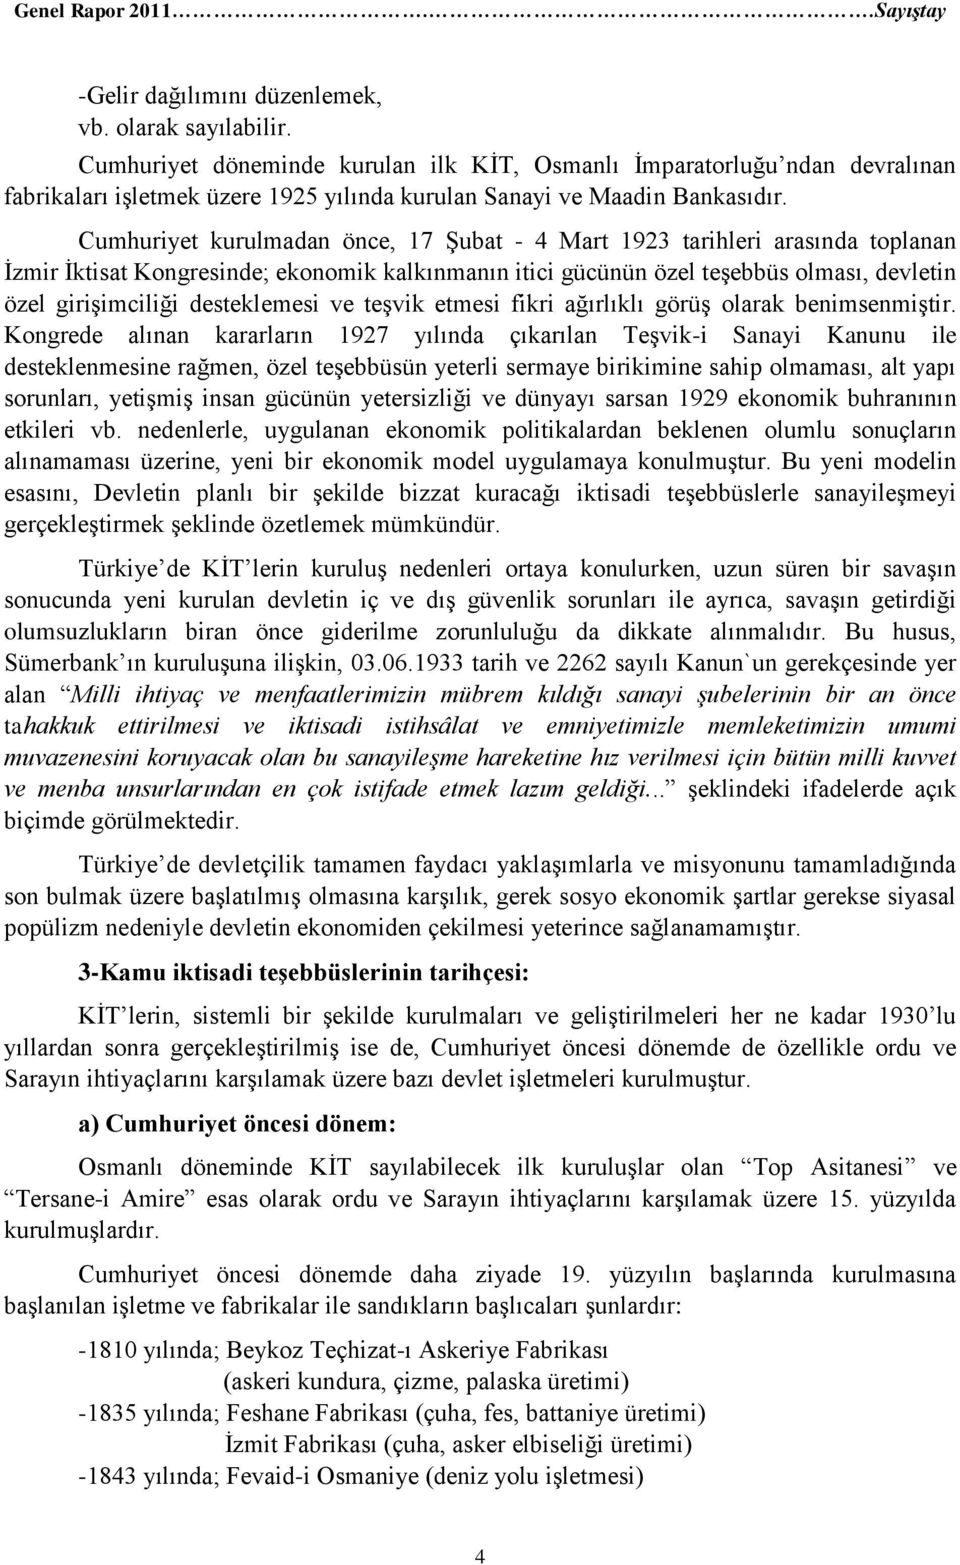 Cumhuriyet kurulmadan önce, 17 Şubat - 4 Mart 1923 tarihleri arasında toplanan İzmir İktisat Kongresinde; ekonomik kalkınmanın itici gücünün özel teşebbüs olması, devletin özel girişimciliği